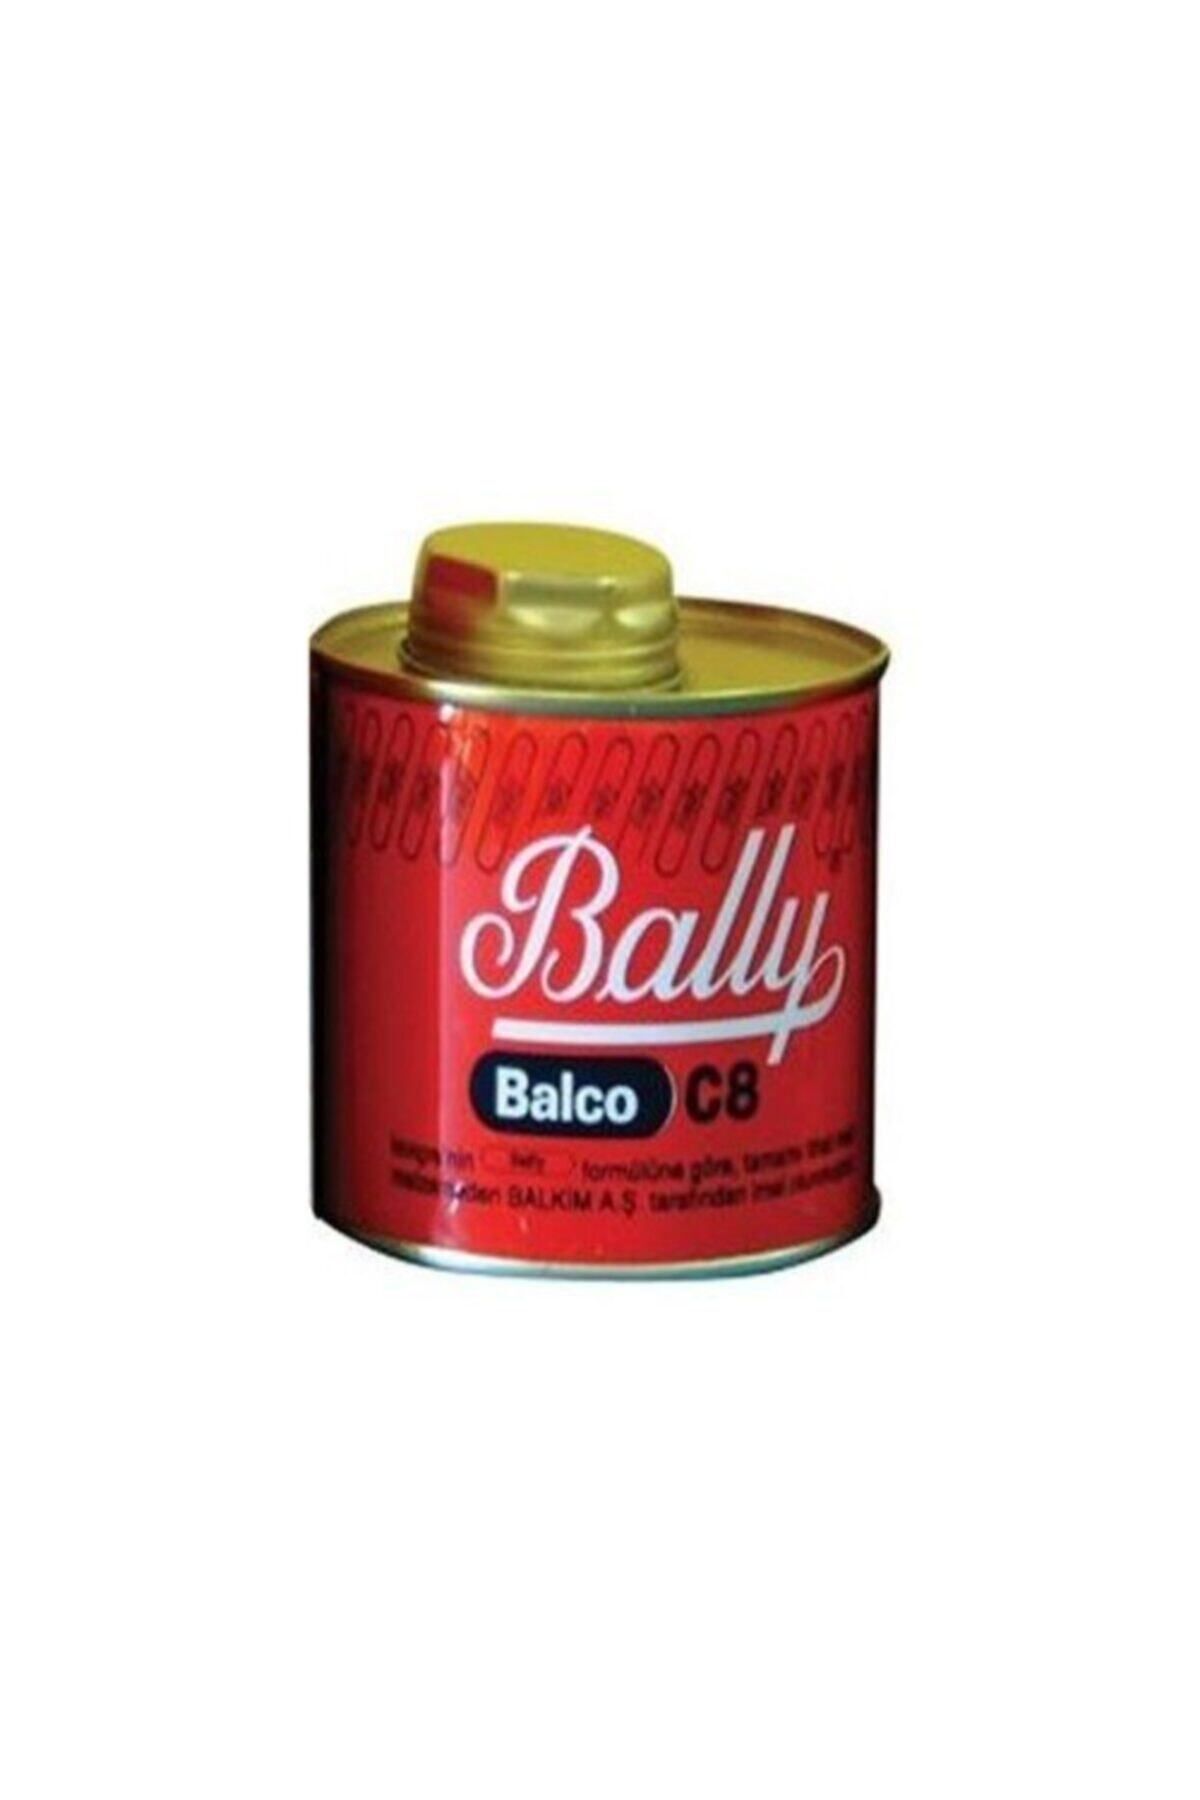 Bally Balco C-8 1/2 400 Gr